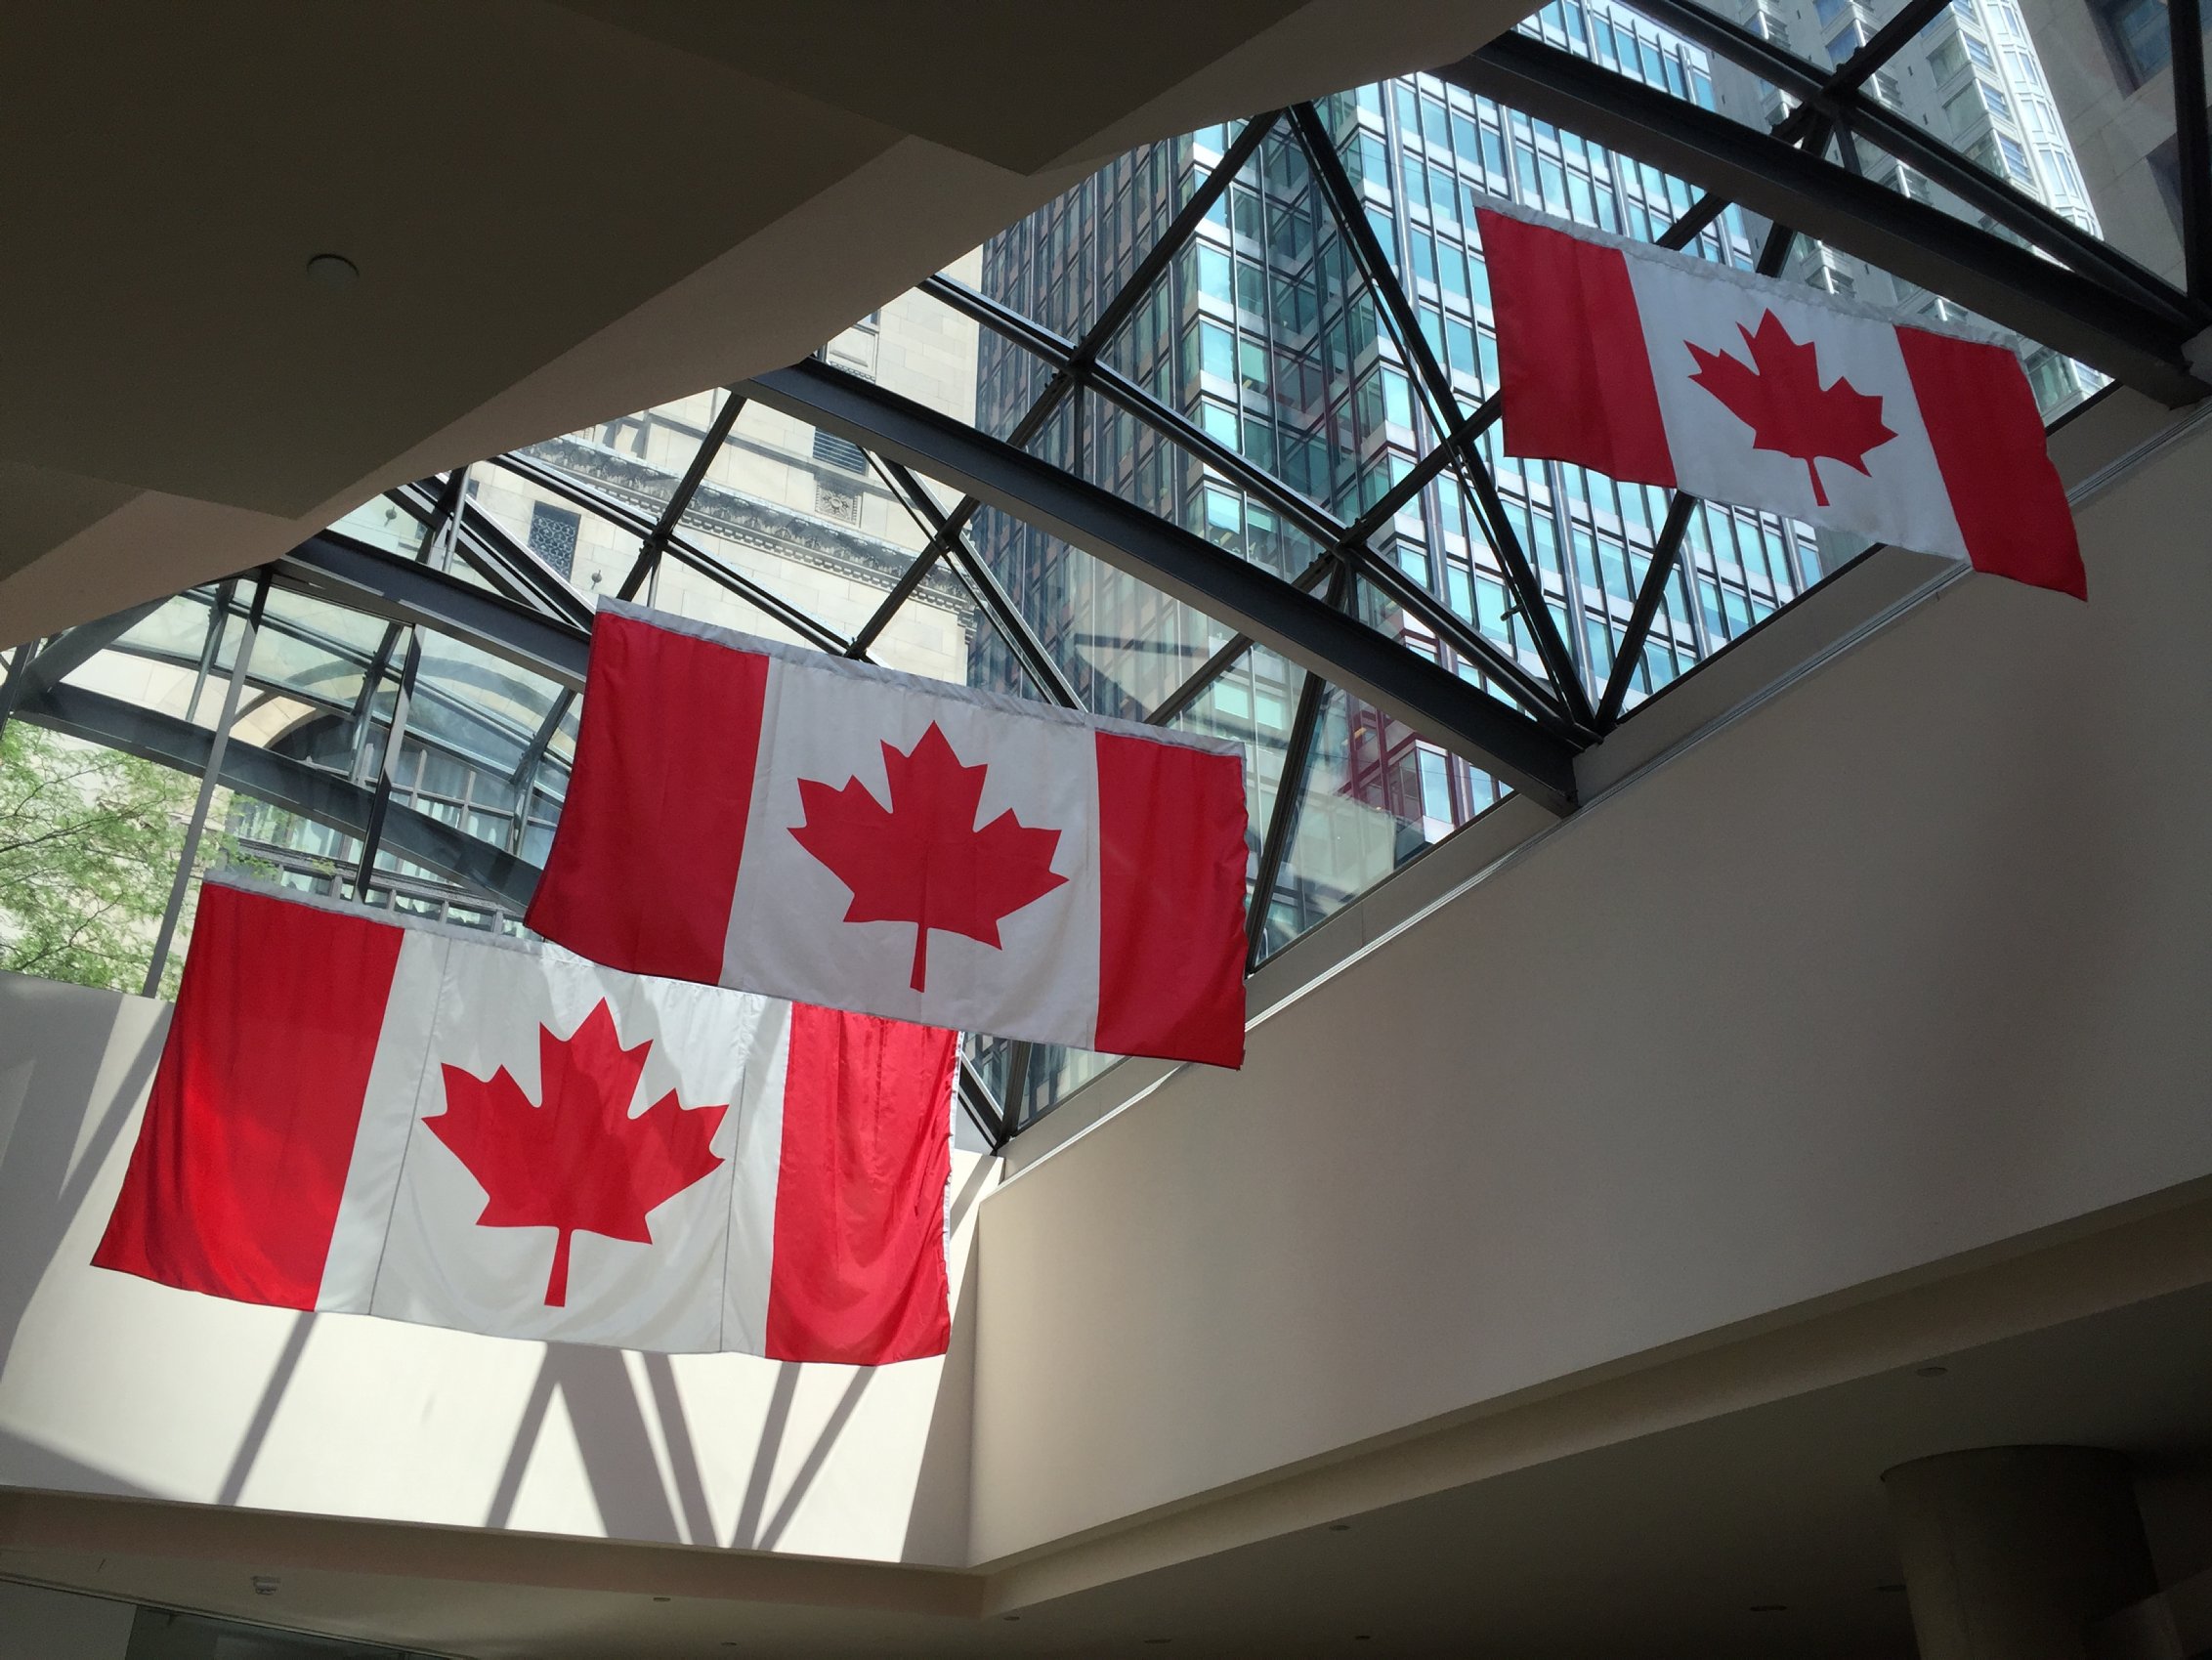 Colapsa en minutos proceso para apadrinar a inmigrantes a Canadá